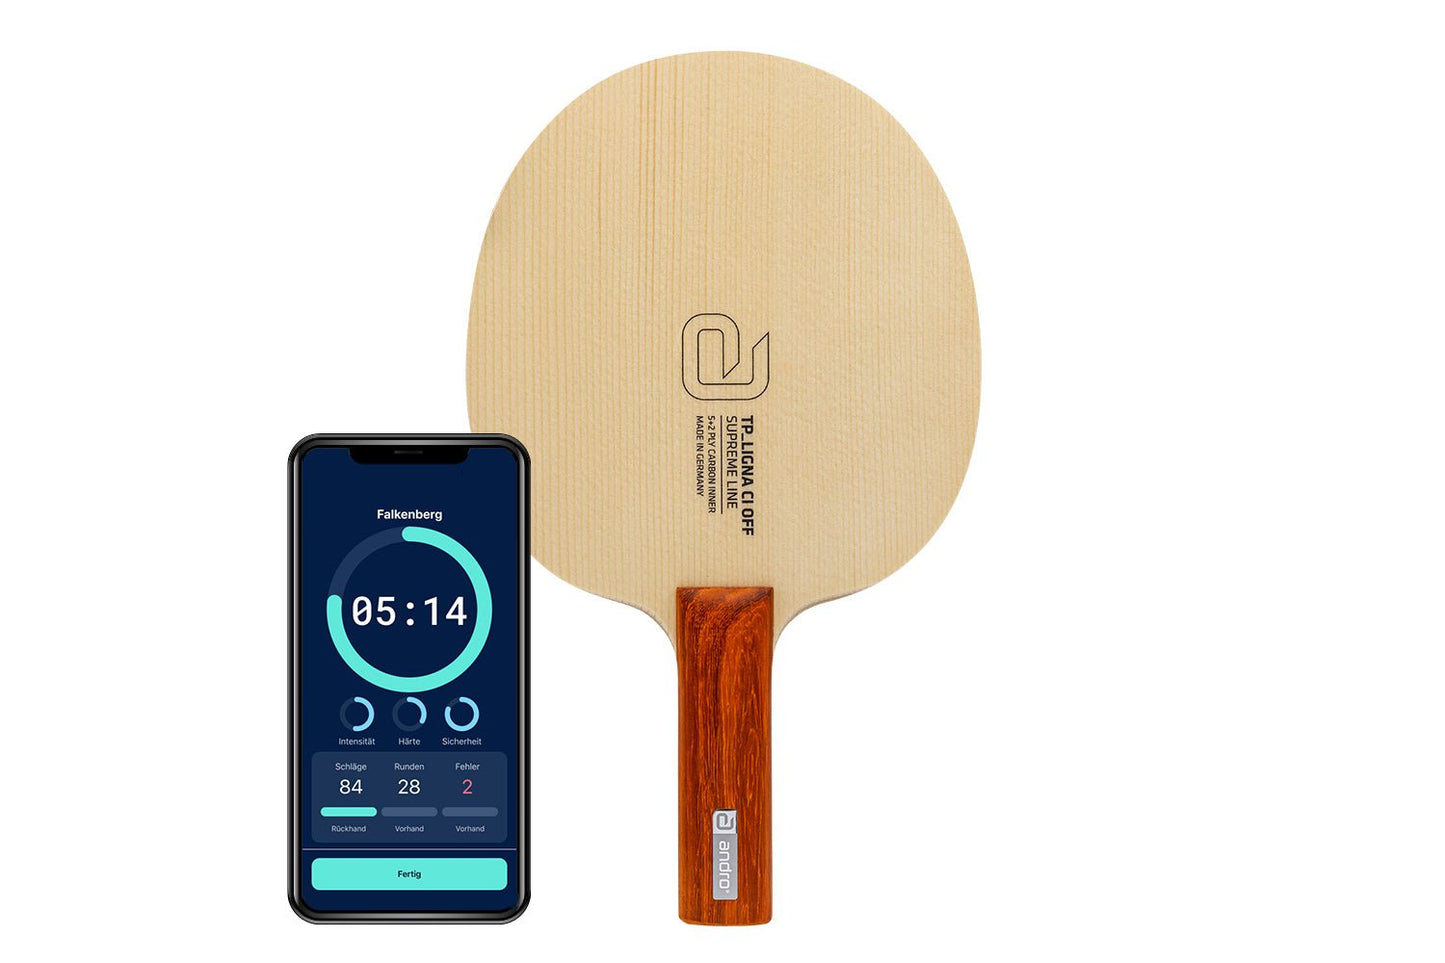 andro TP Ligna CI Tischtennisschläger mit geradem Griff und Smartphone zeigt Daten des Schlägers vor weißem Hintergrund